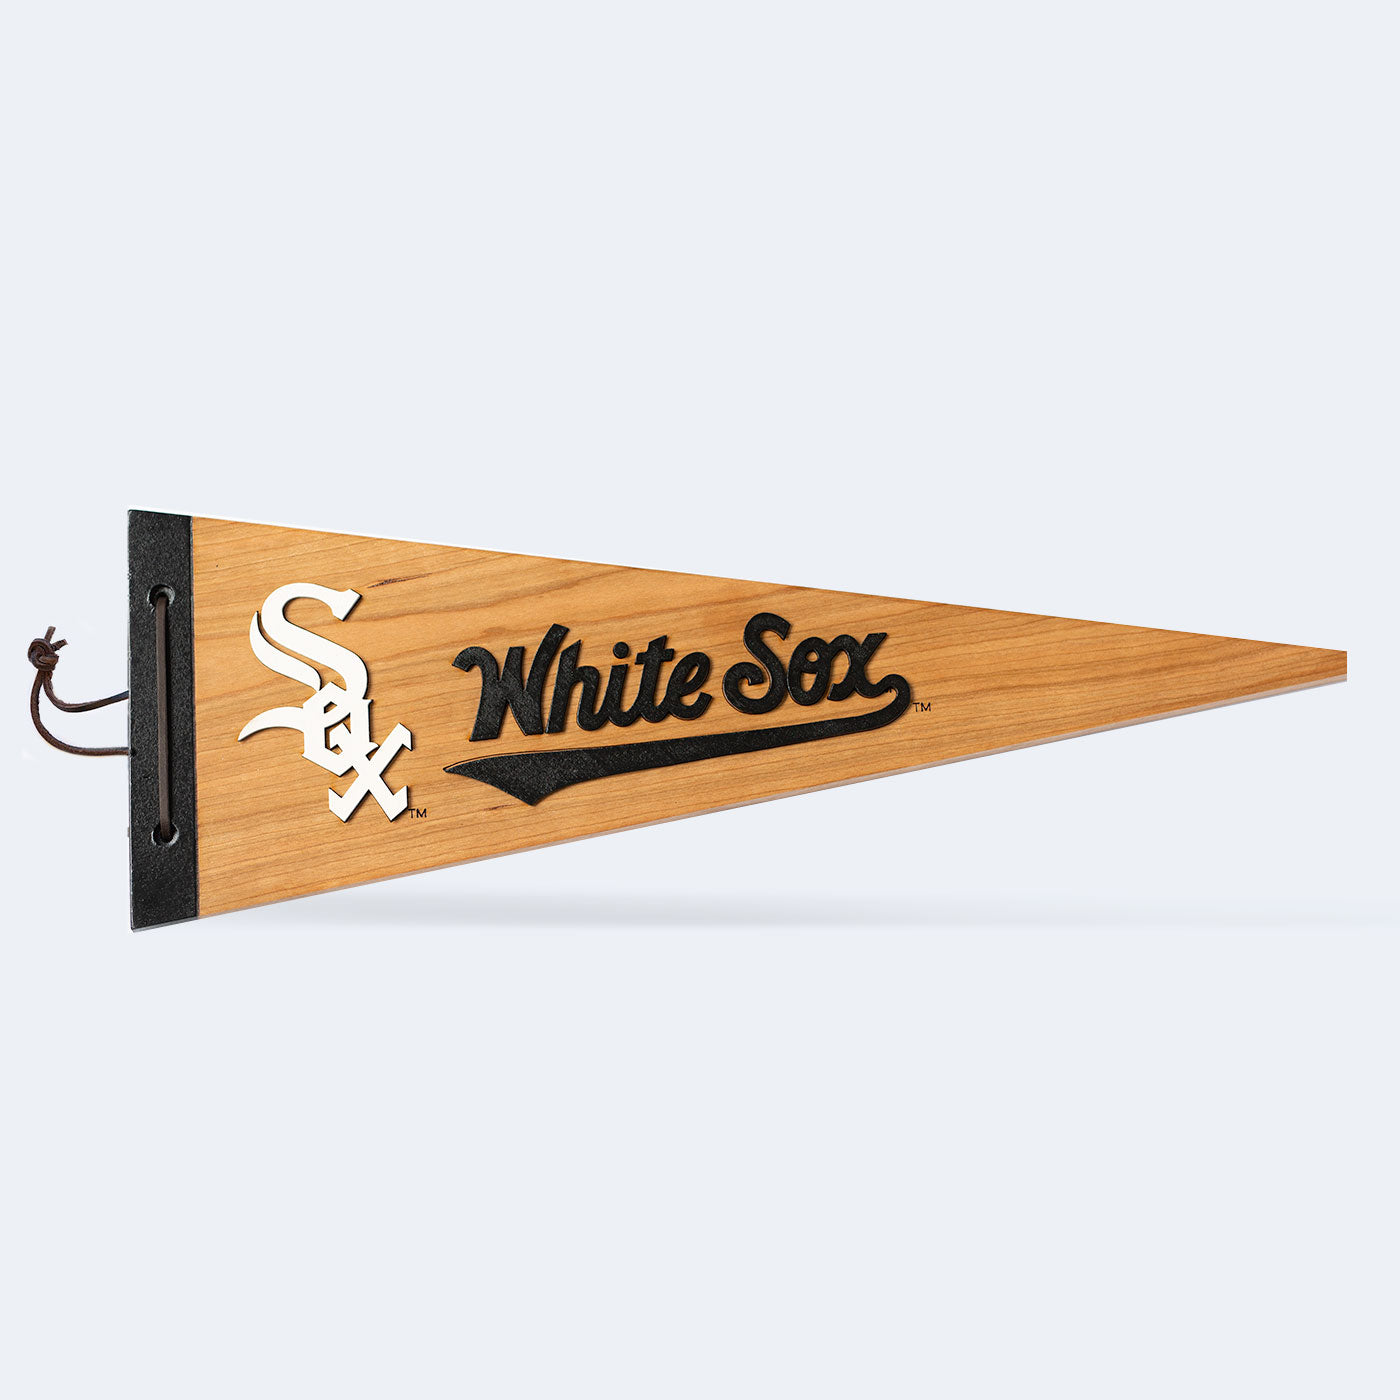 Chicago White Sox MLB Major League Baseball Custom Name & Number